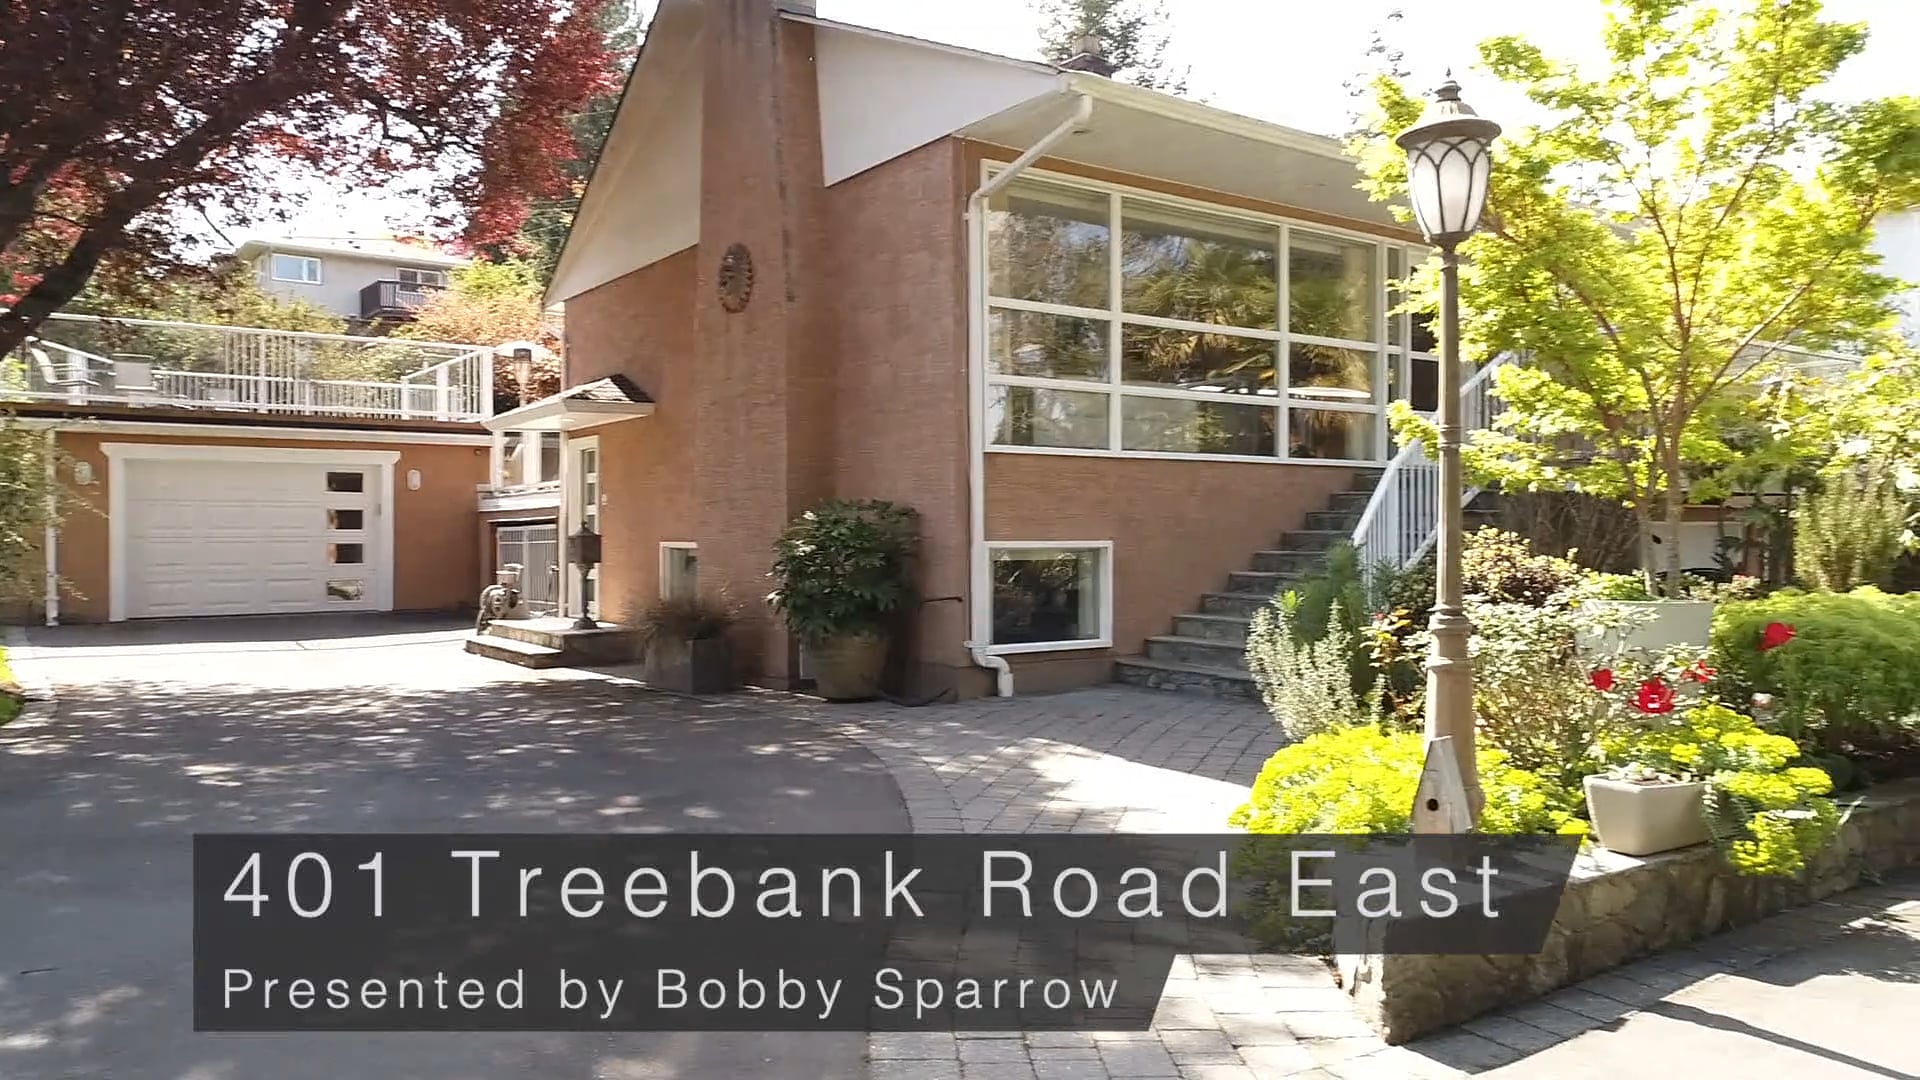 Bobby Sparrow Presents 401 Treebank Road E On Vimeo 5850